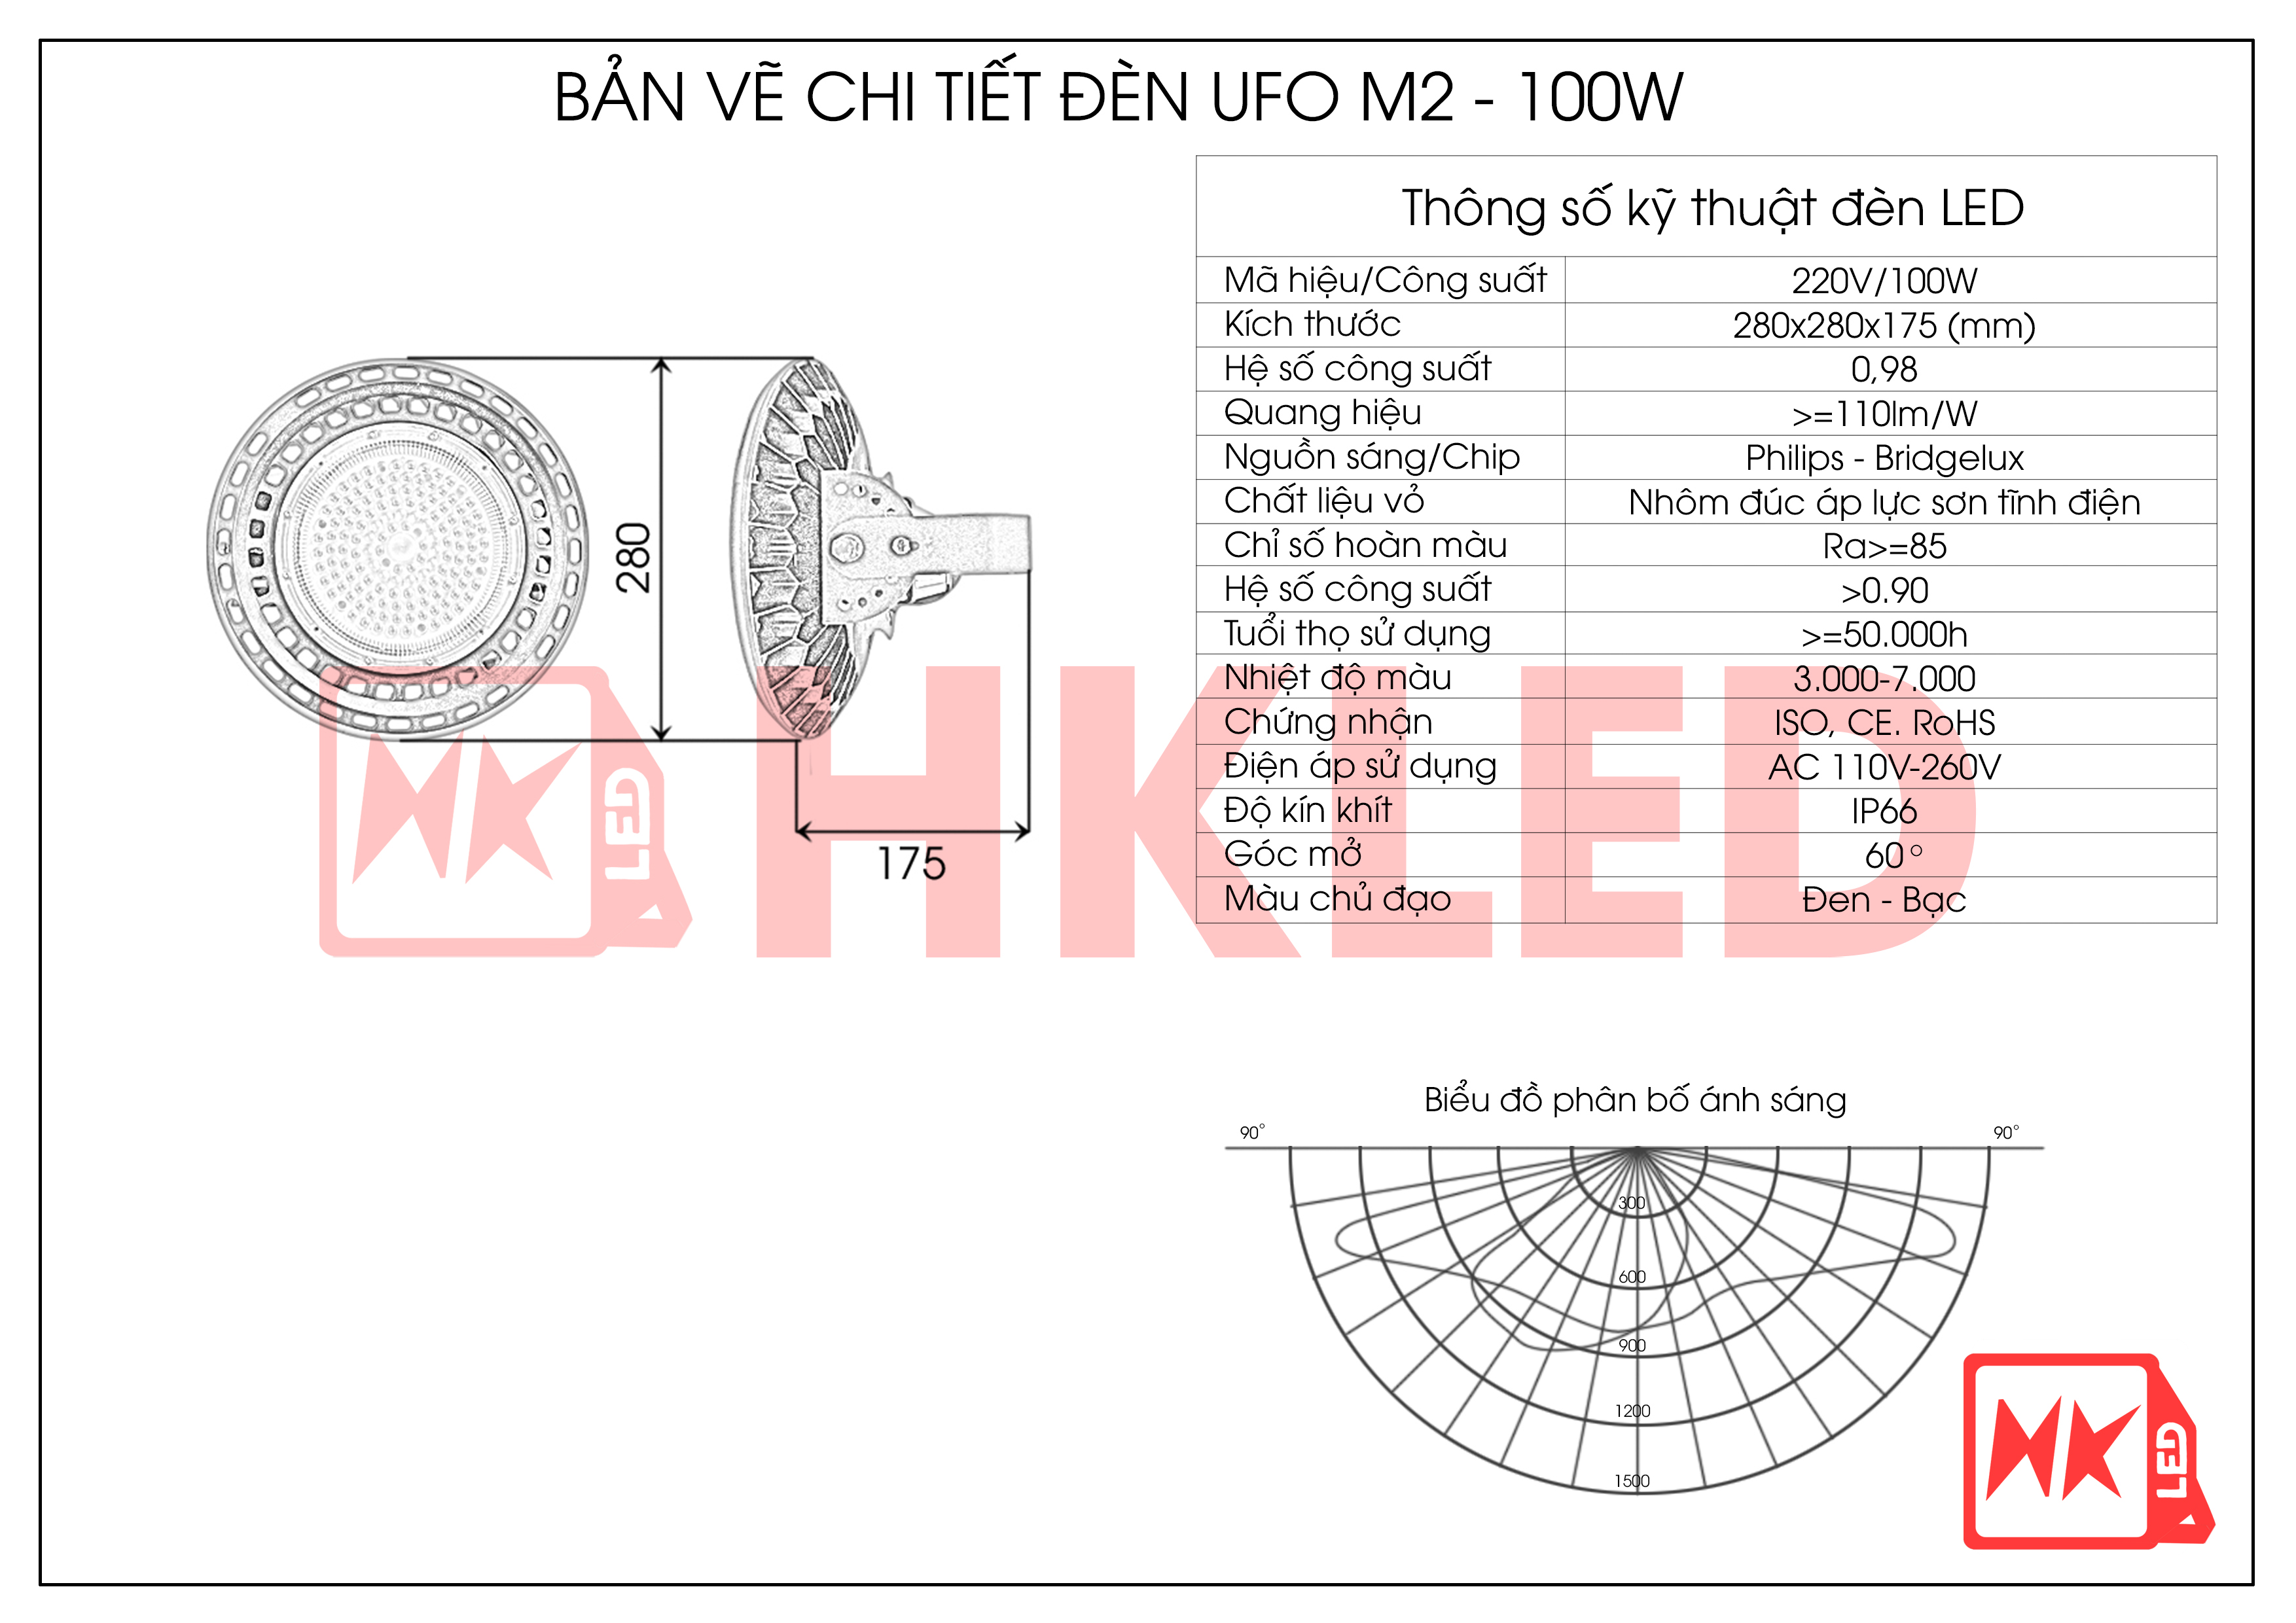 Bản vẽ chi tiết đèn UFO nhà xưởng M2 100W